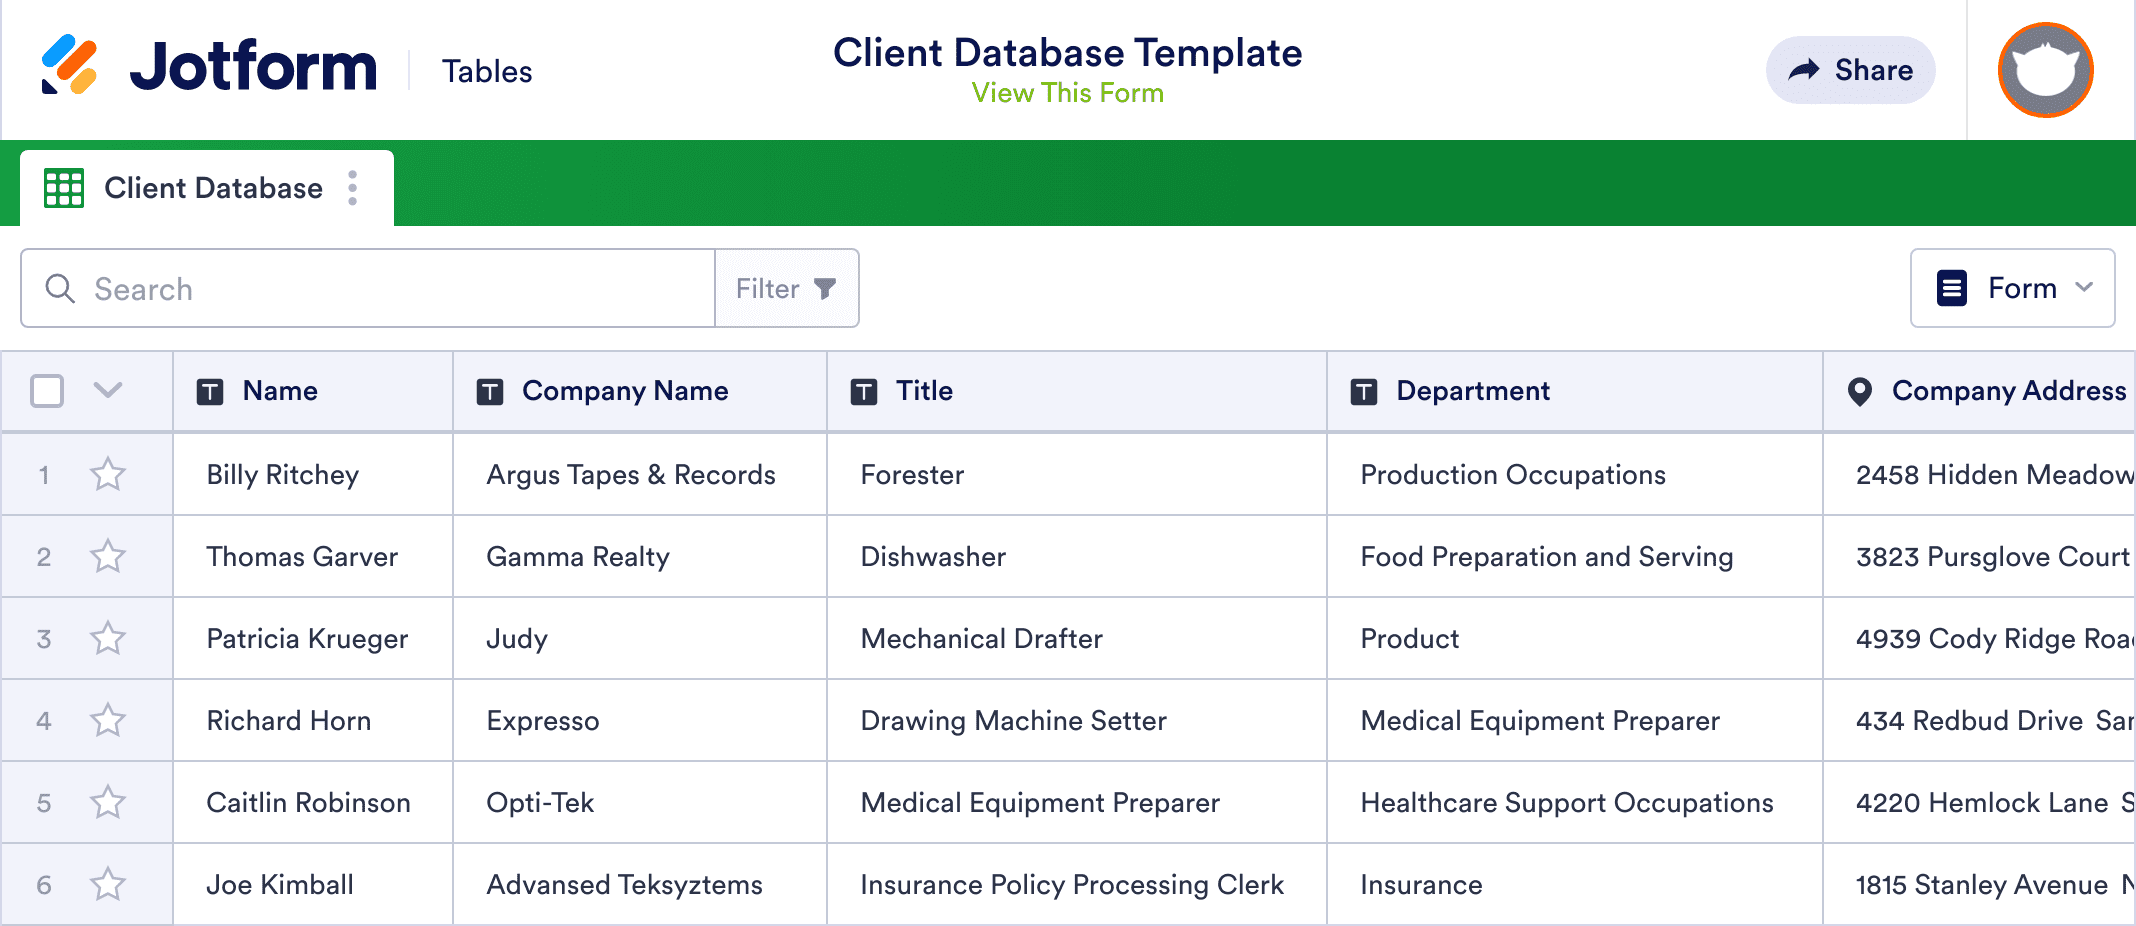 Client Database Template Jotform Tables